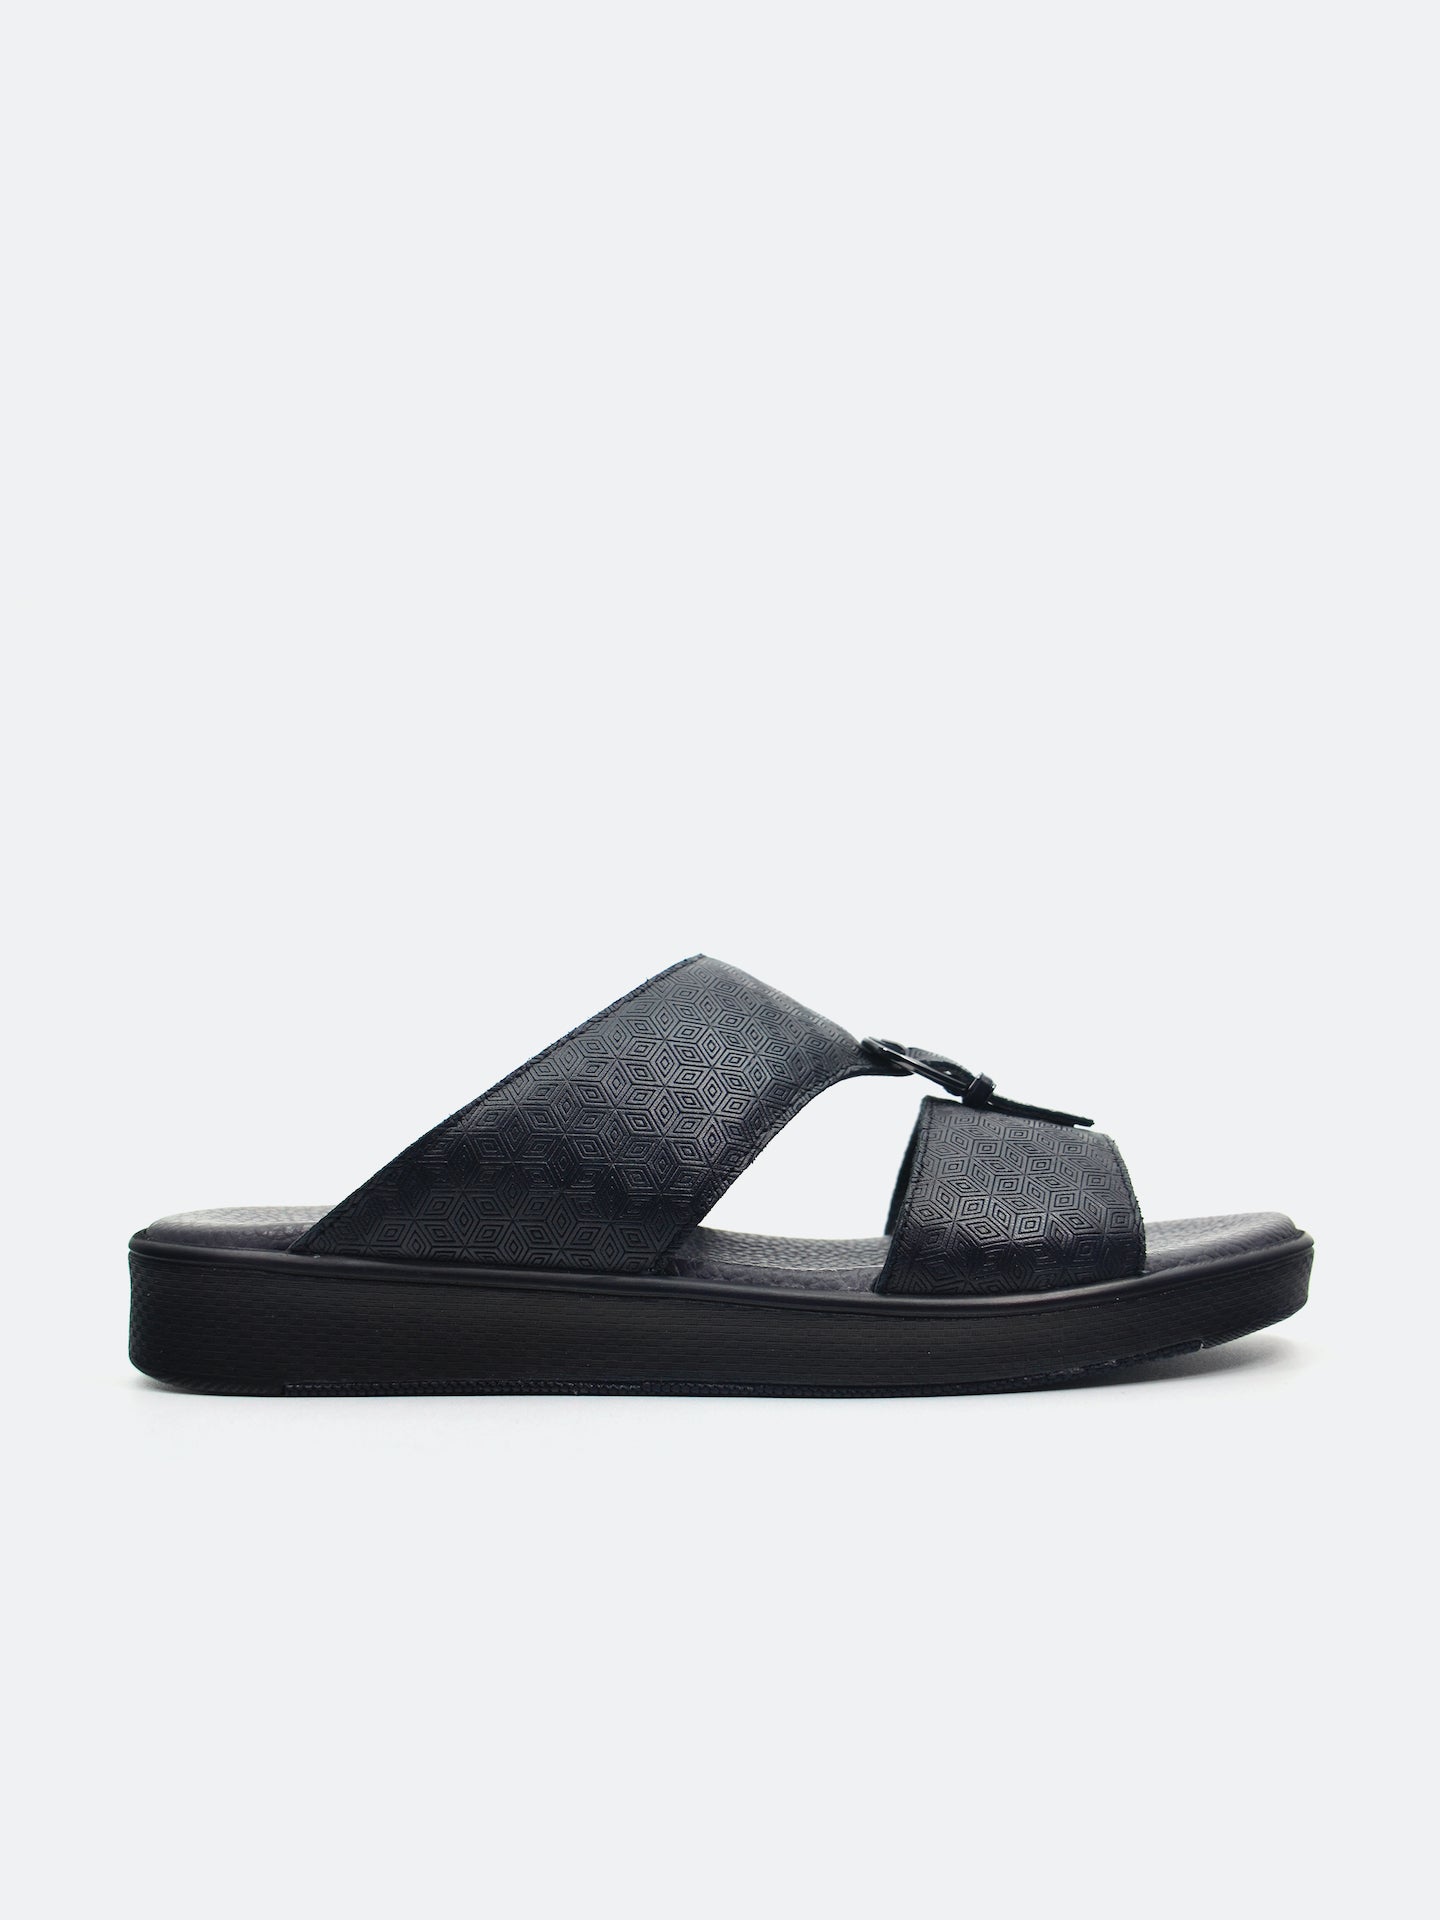 Barjeel Uno SP1-017 Men's Arabic Sandals #color_Black